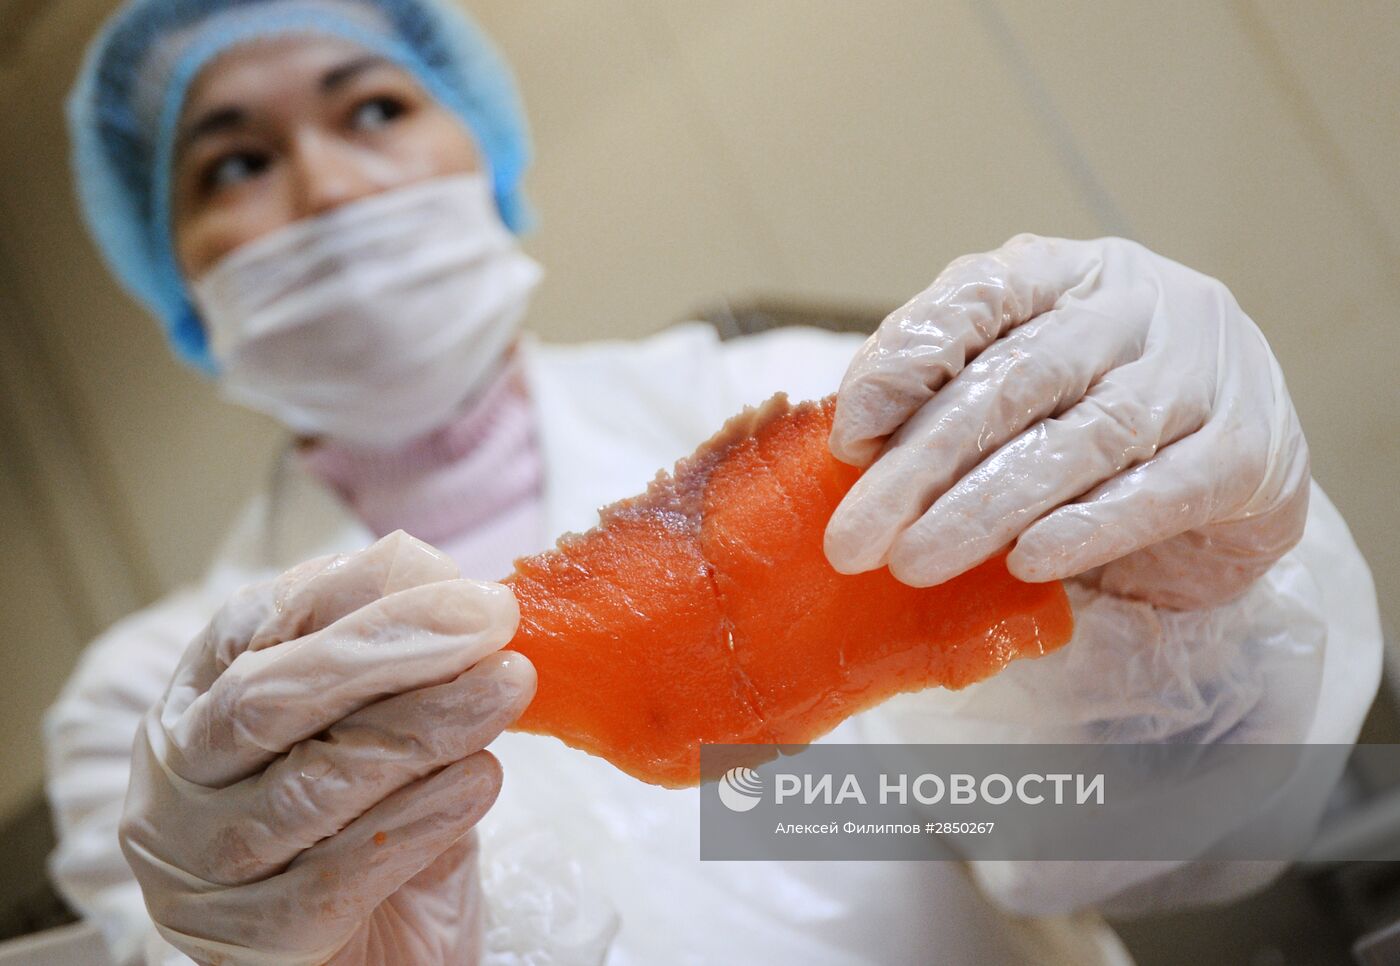 Предприятие по переработке рыбы "Русская рыбная фактория" в Москве